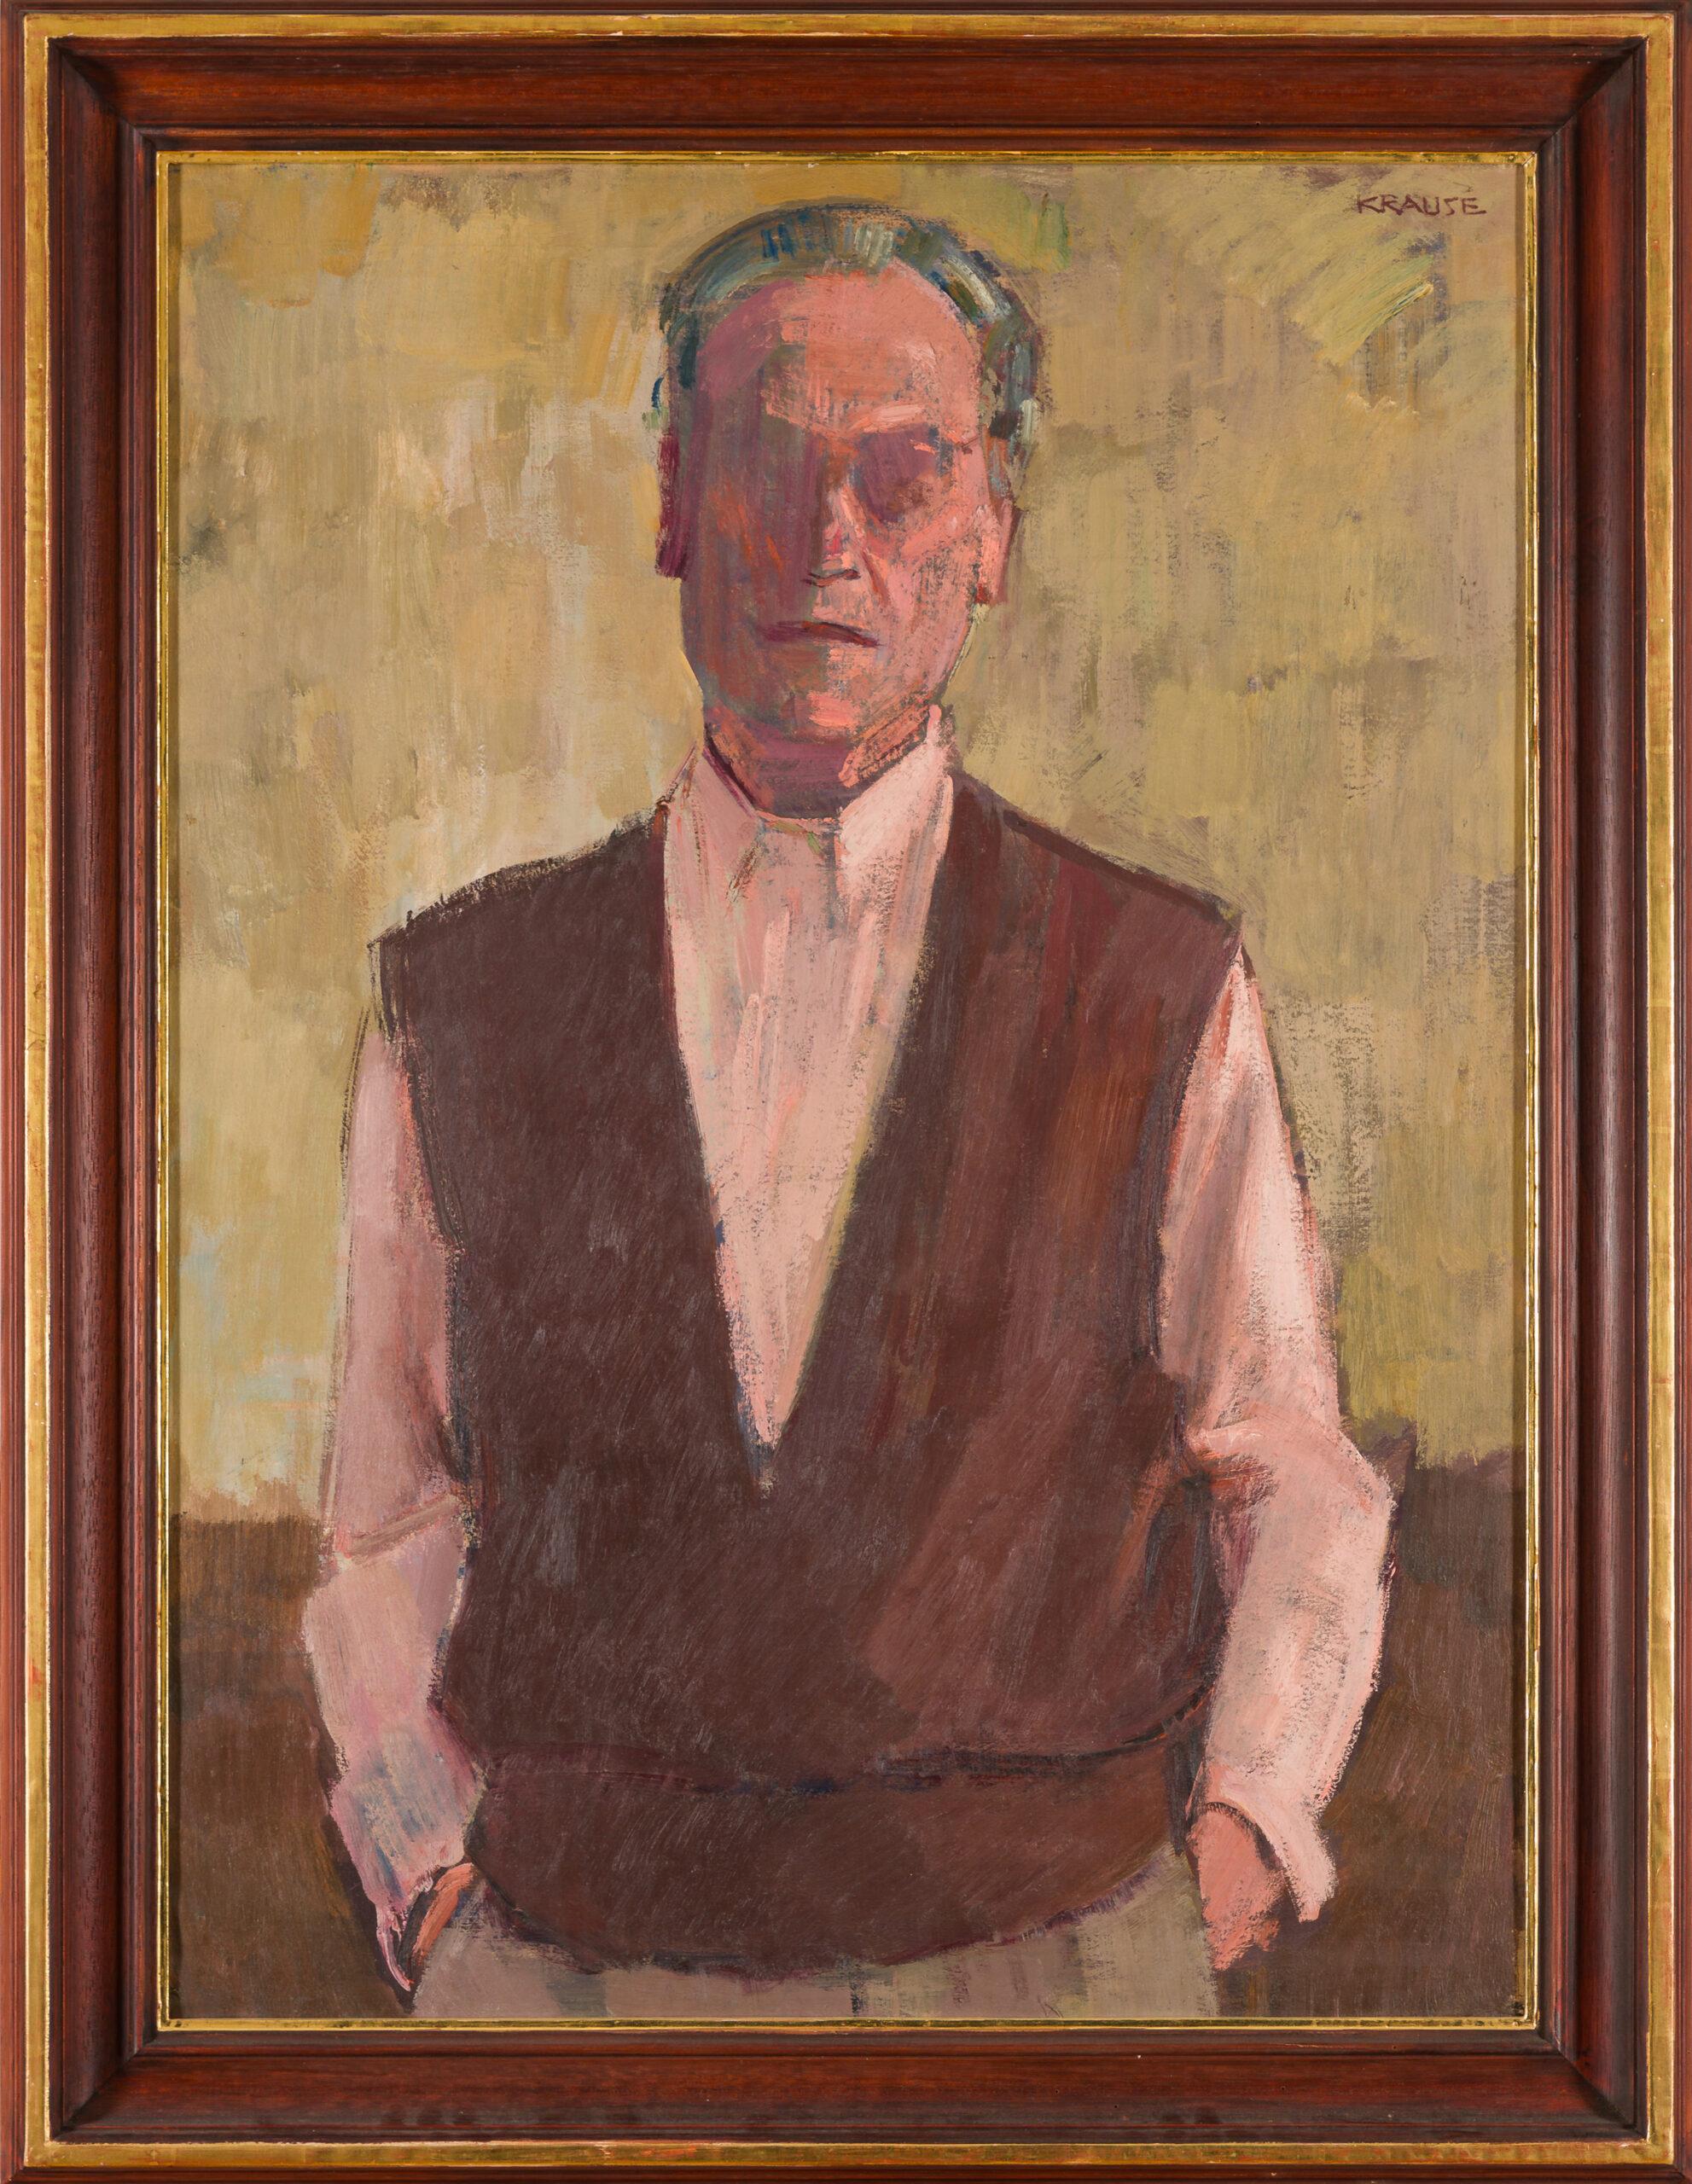 Krause Heinrich-Self-Portrait